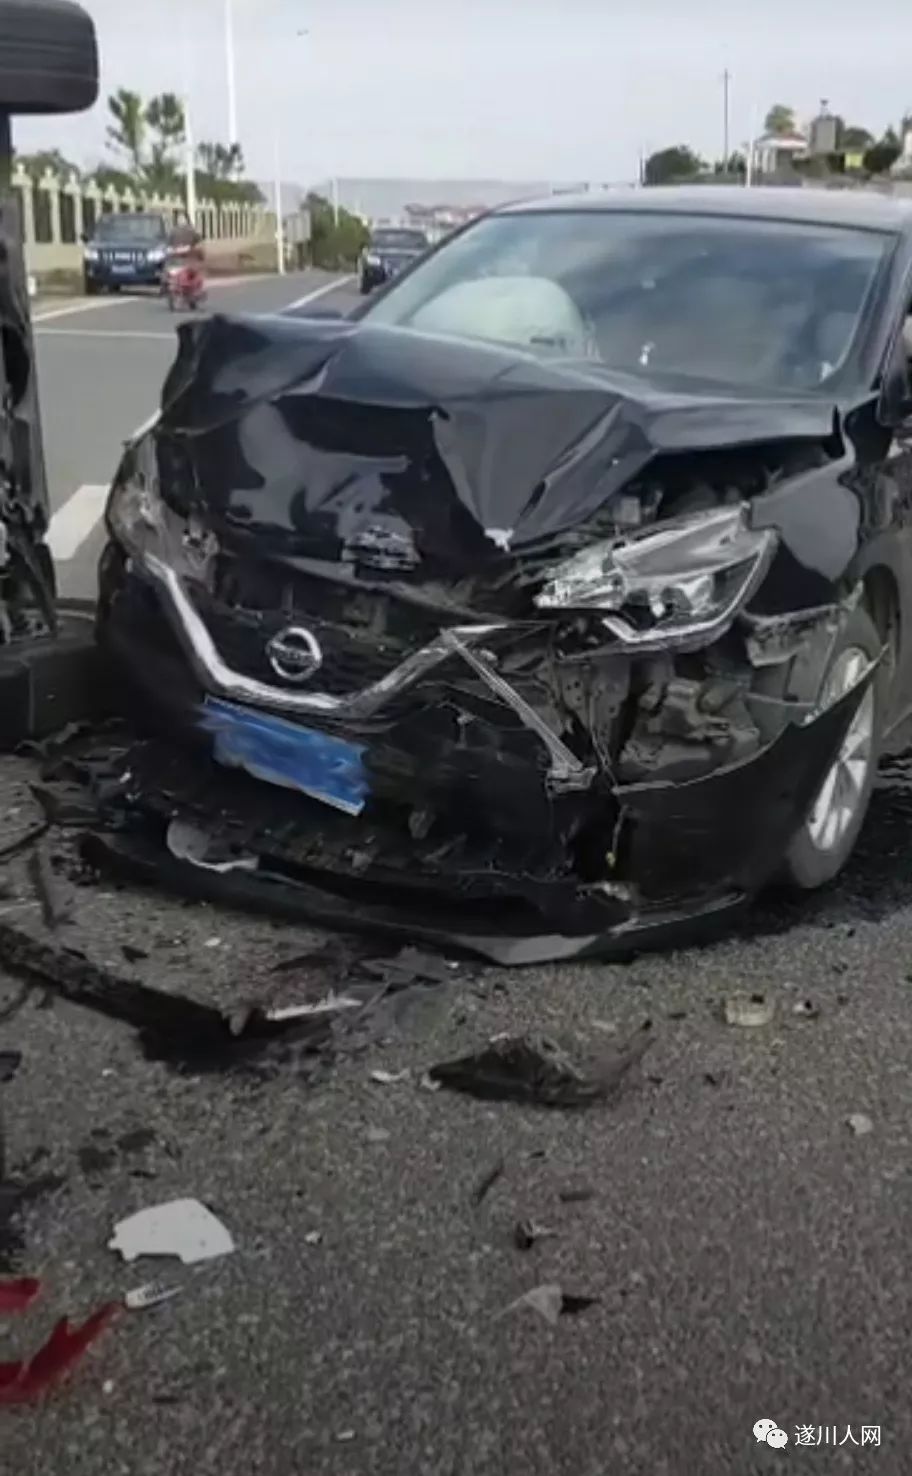 遂川红塔附近两车相撞,一辆车被撞侧翻,一辆车头被撞烂!